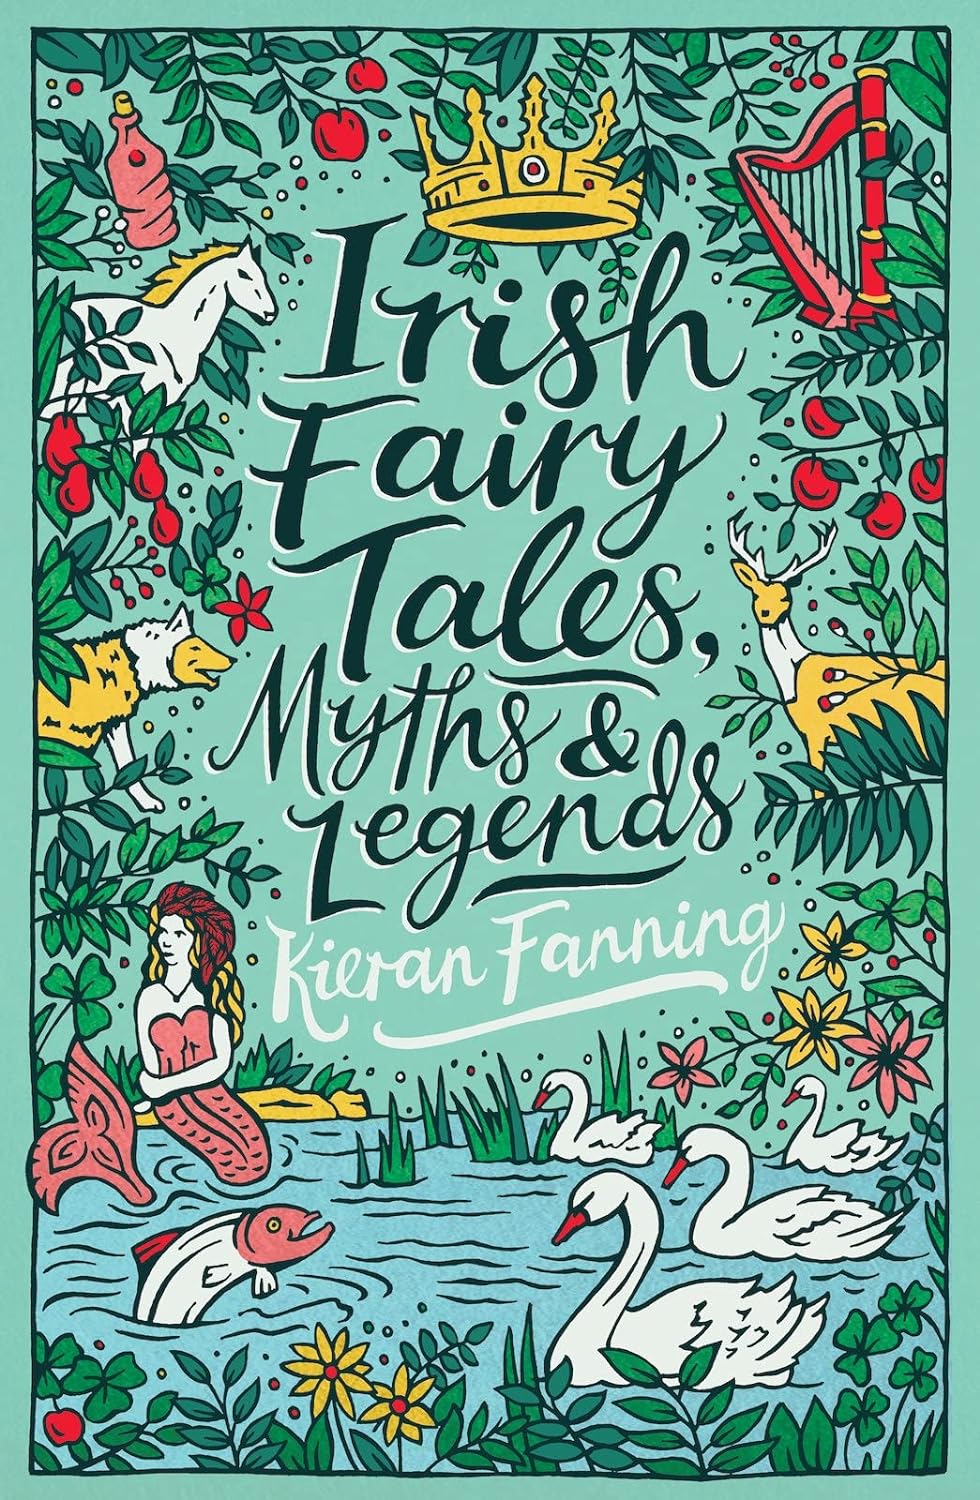 Kieran Fanning: Irish Fairy Tales - Myths and Legends